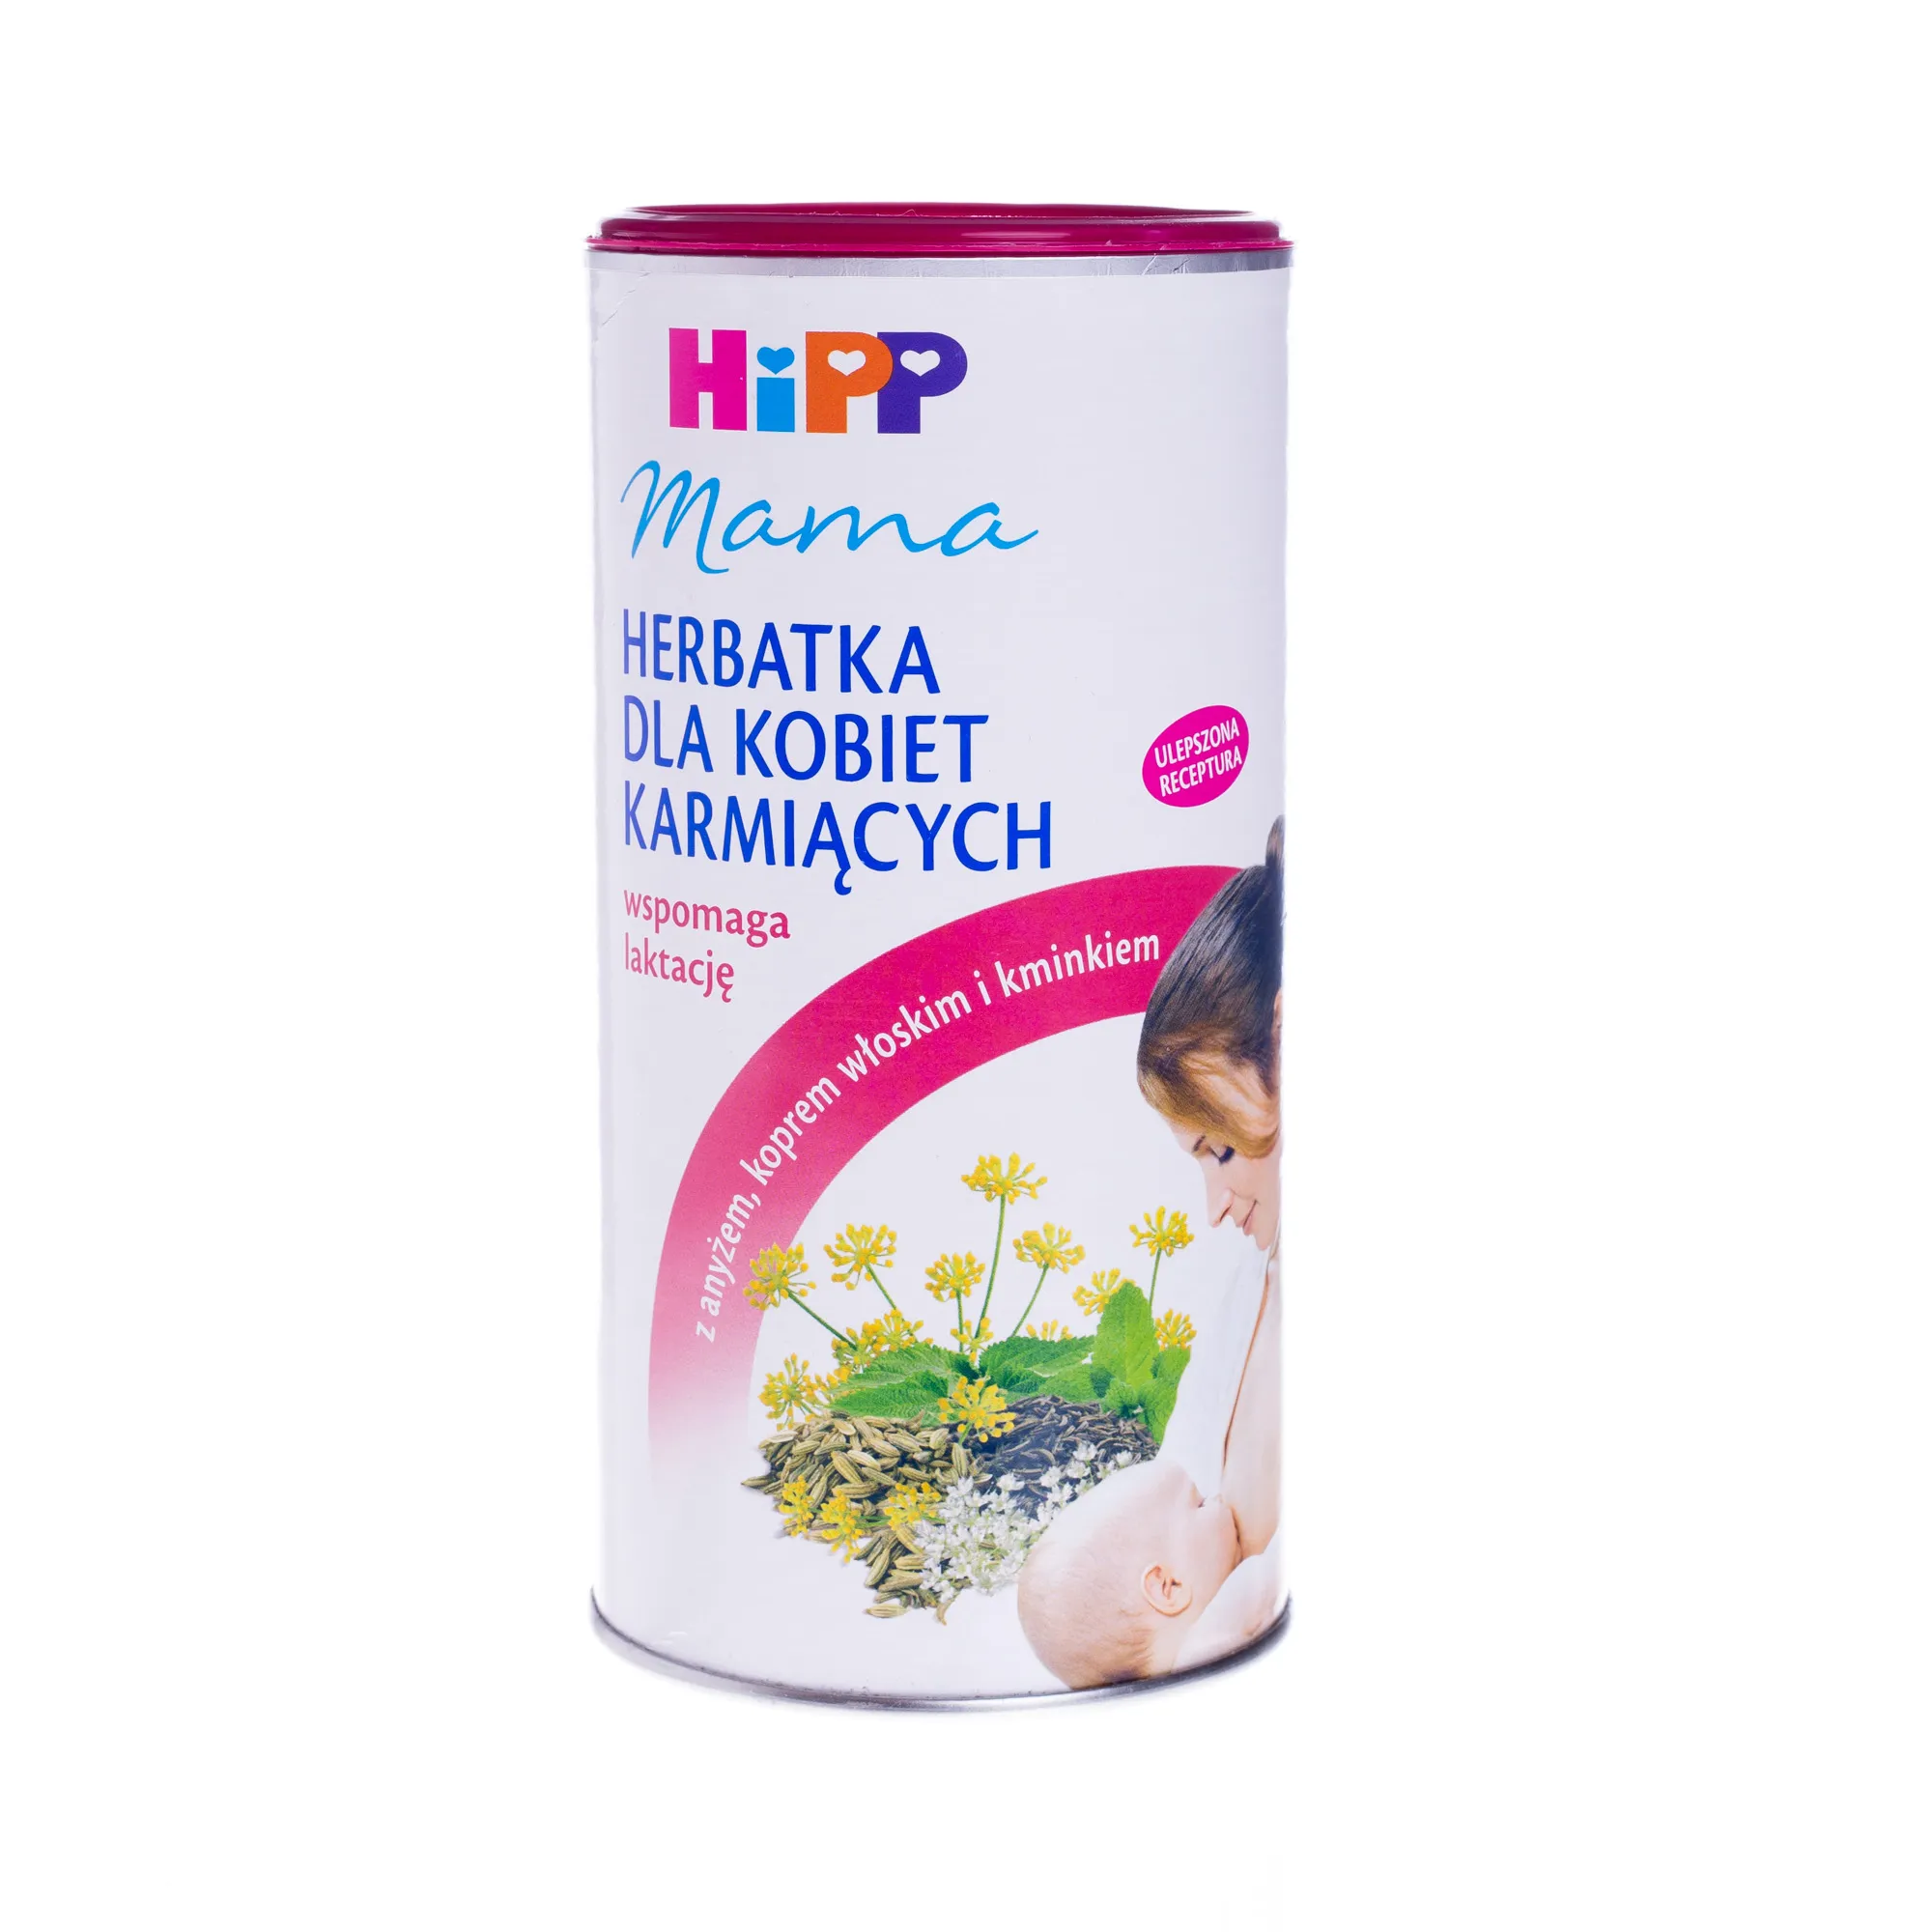 HiPP Mama, herbatka dla kobiet karmiących, 200 g